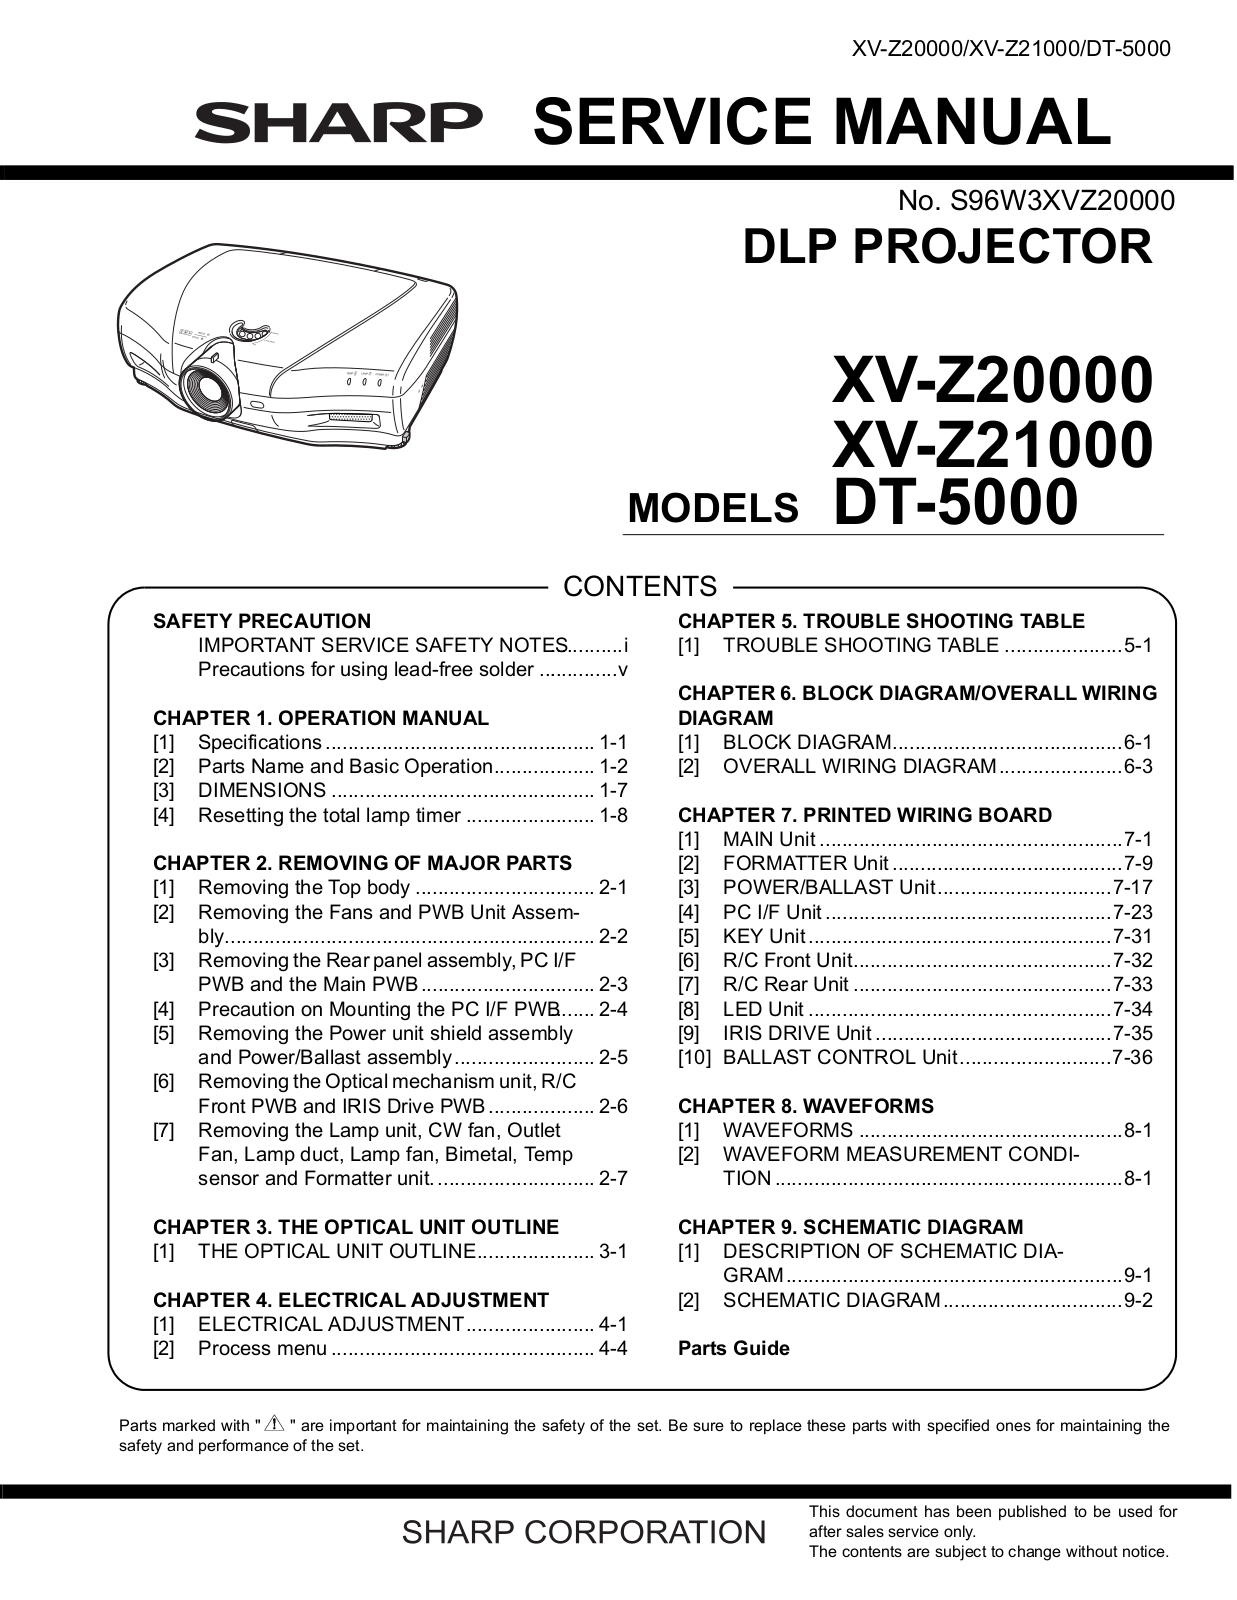 Sharp XV-Z20000, XV-Z21000, DT-5000 Service Manual